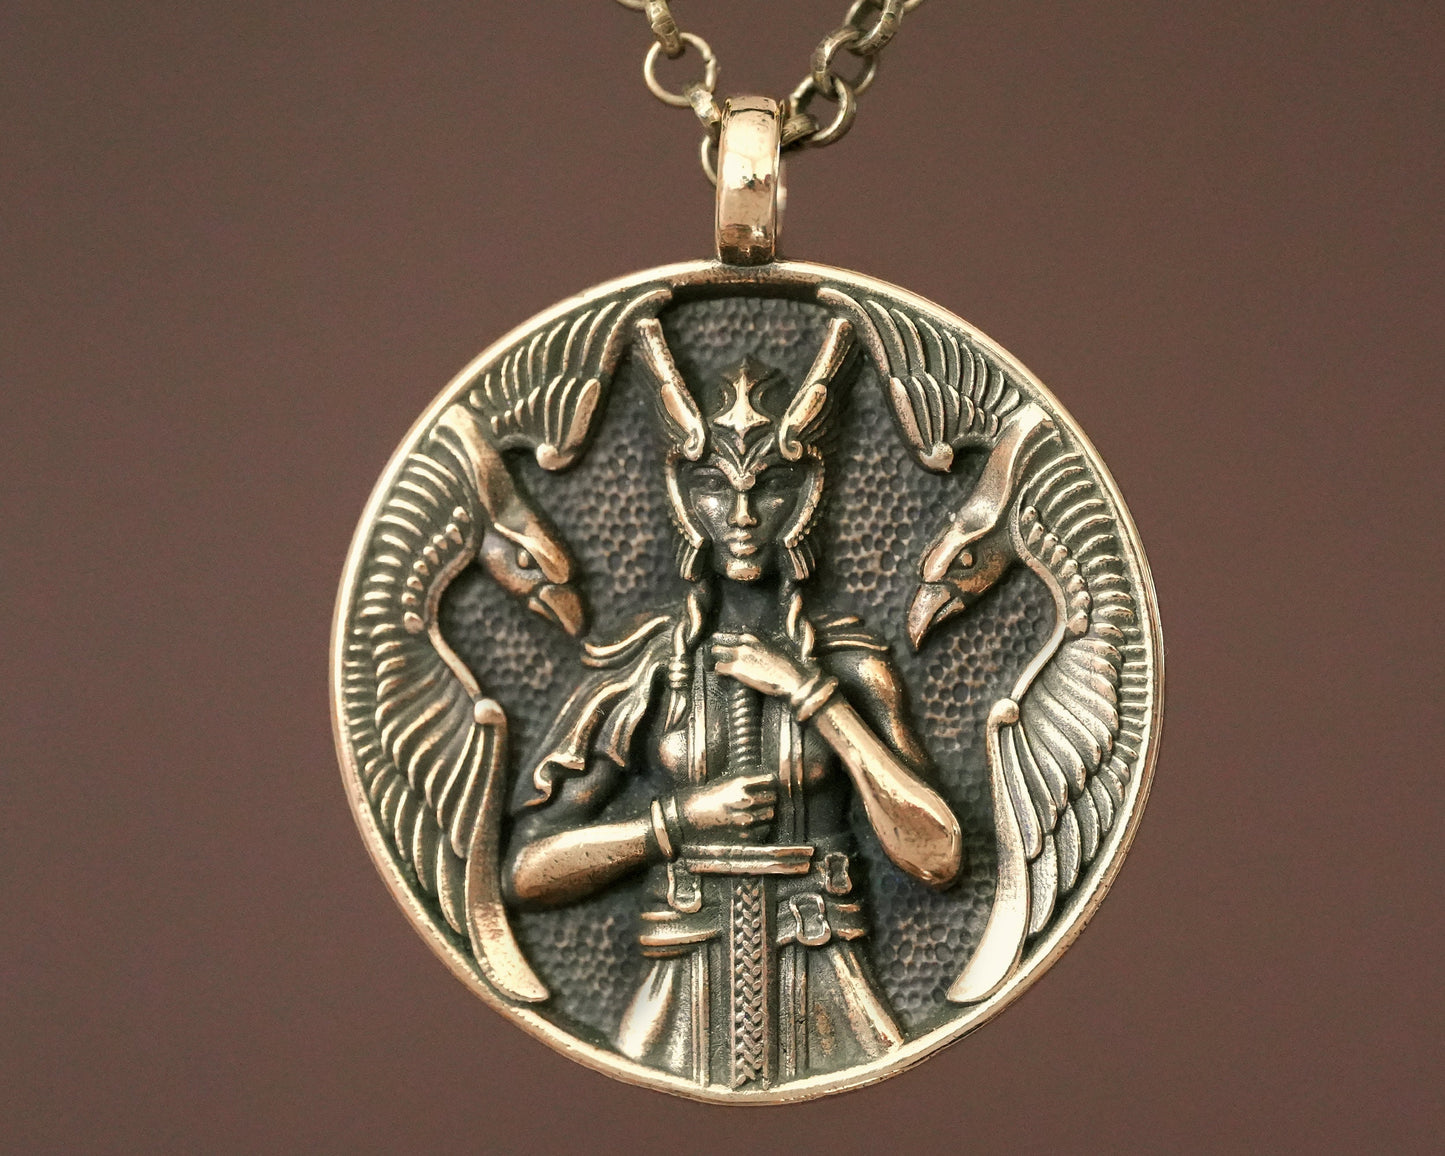 Halskette mit Schutzgöttin der Wikinger, Freya, Walküre, Schildmaid – nordischer Odin, Raben, Huginn, Muninn – Schutzanhänger mit 56 cm langer Kette